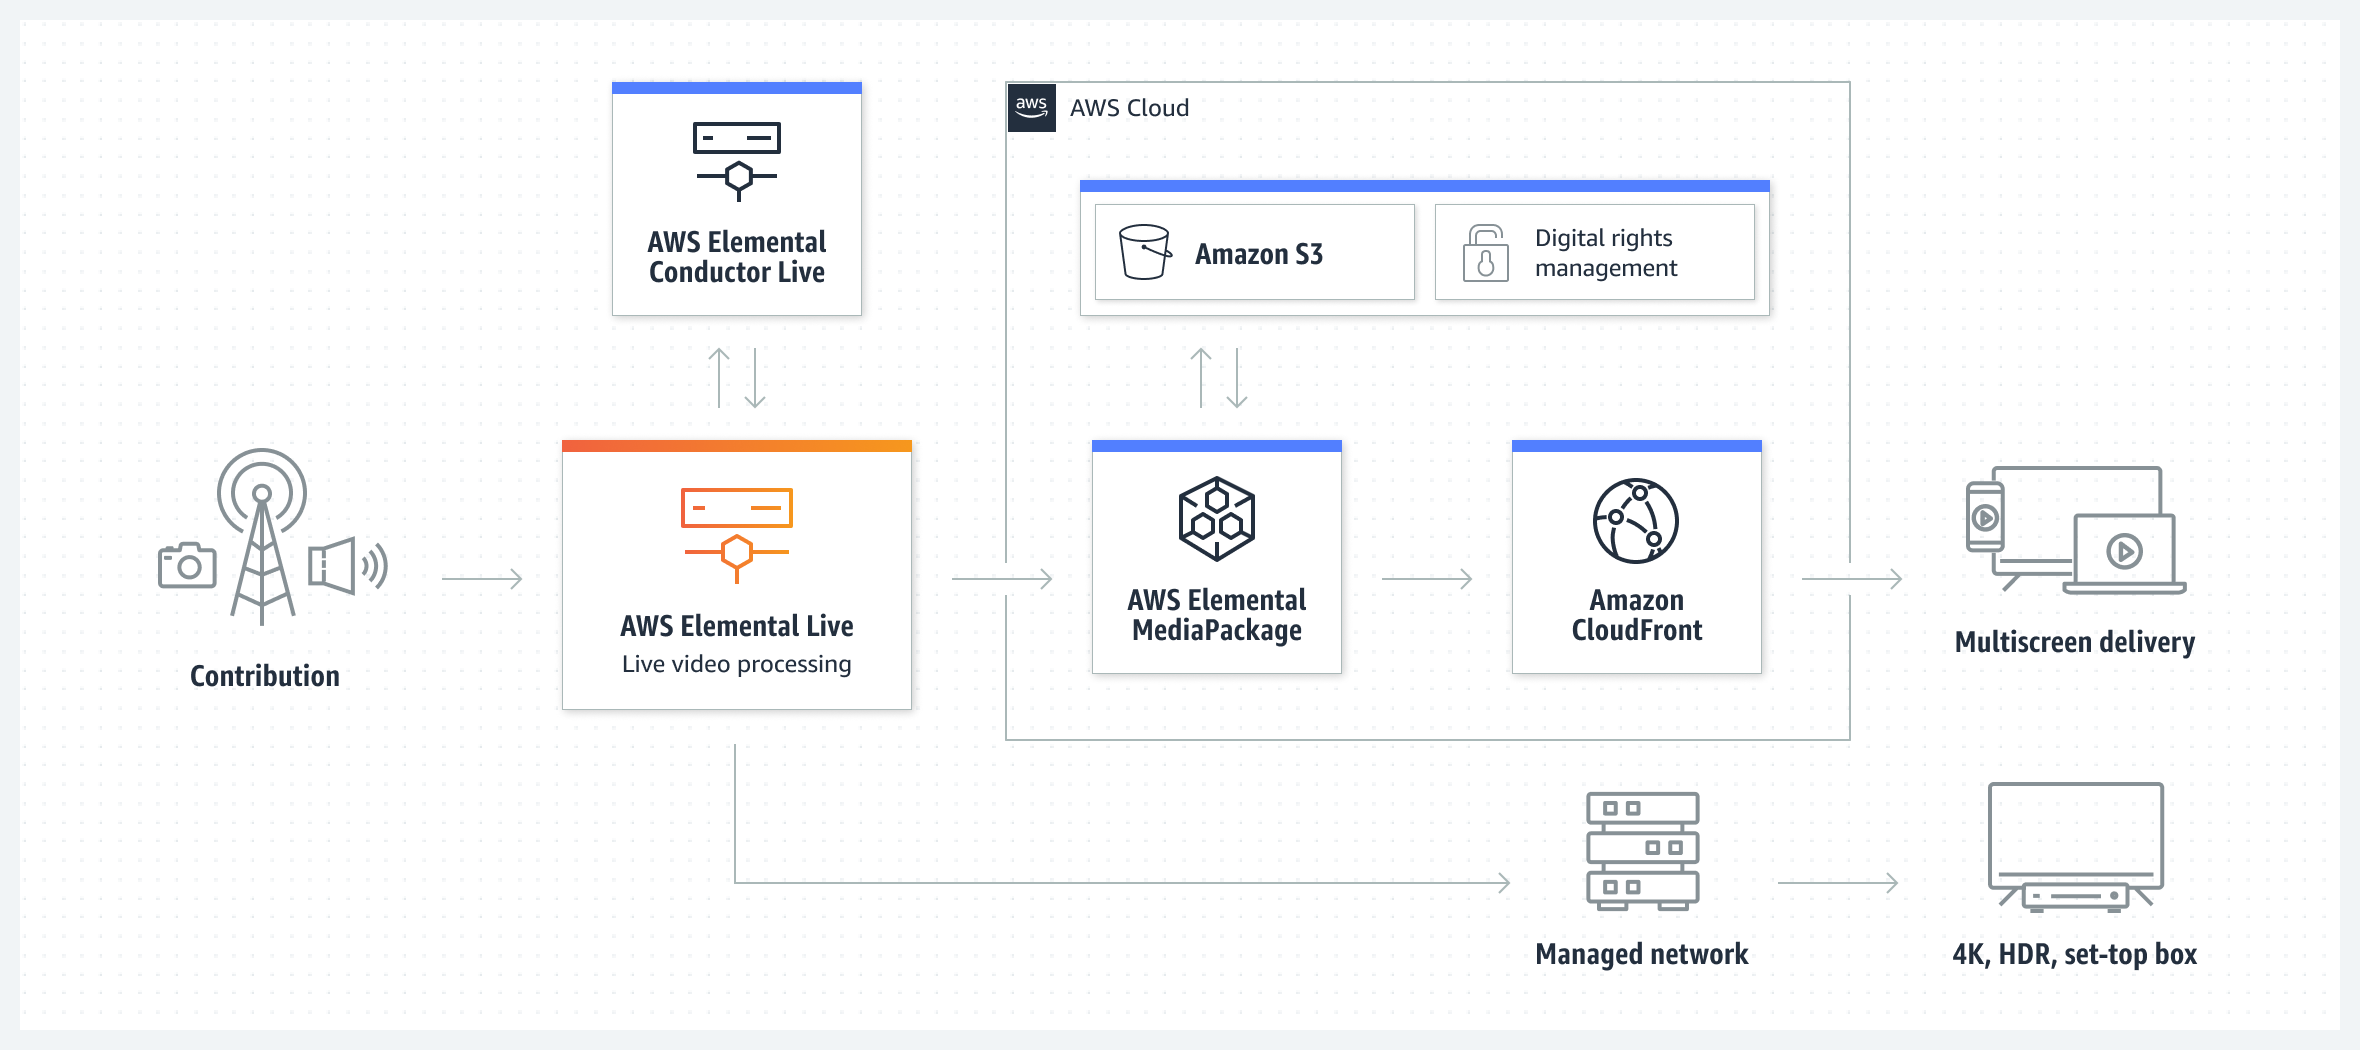 رسم تخطيطي يوضح كيف يتصل AWS Elemental Live بخدمات الوسائط ذات الصلة من AWS لتقديم الفيديو إلى المستخدمين.